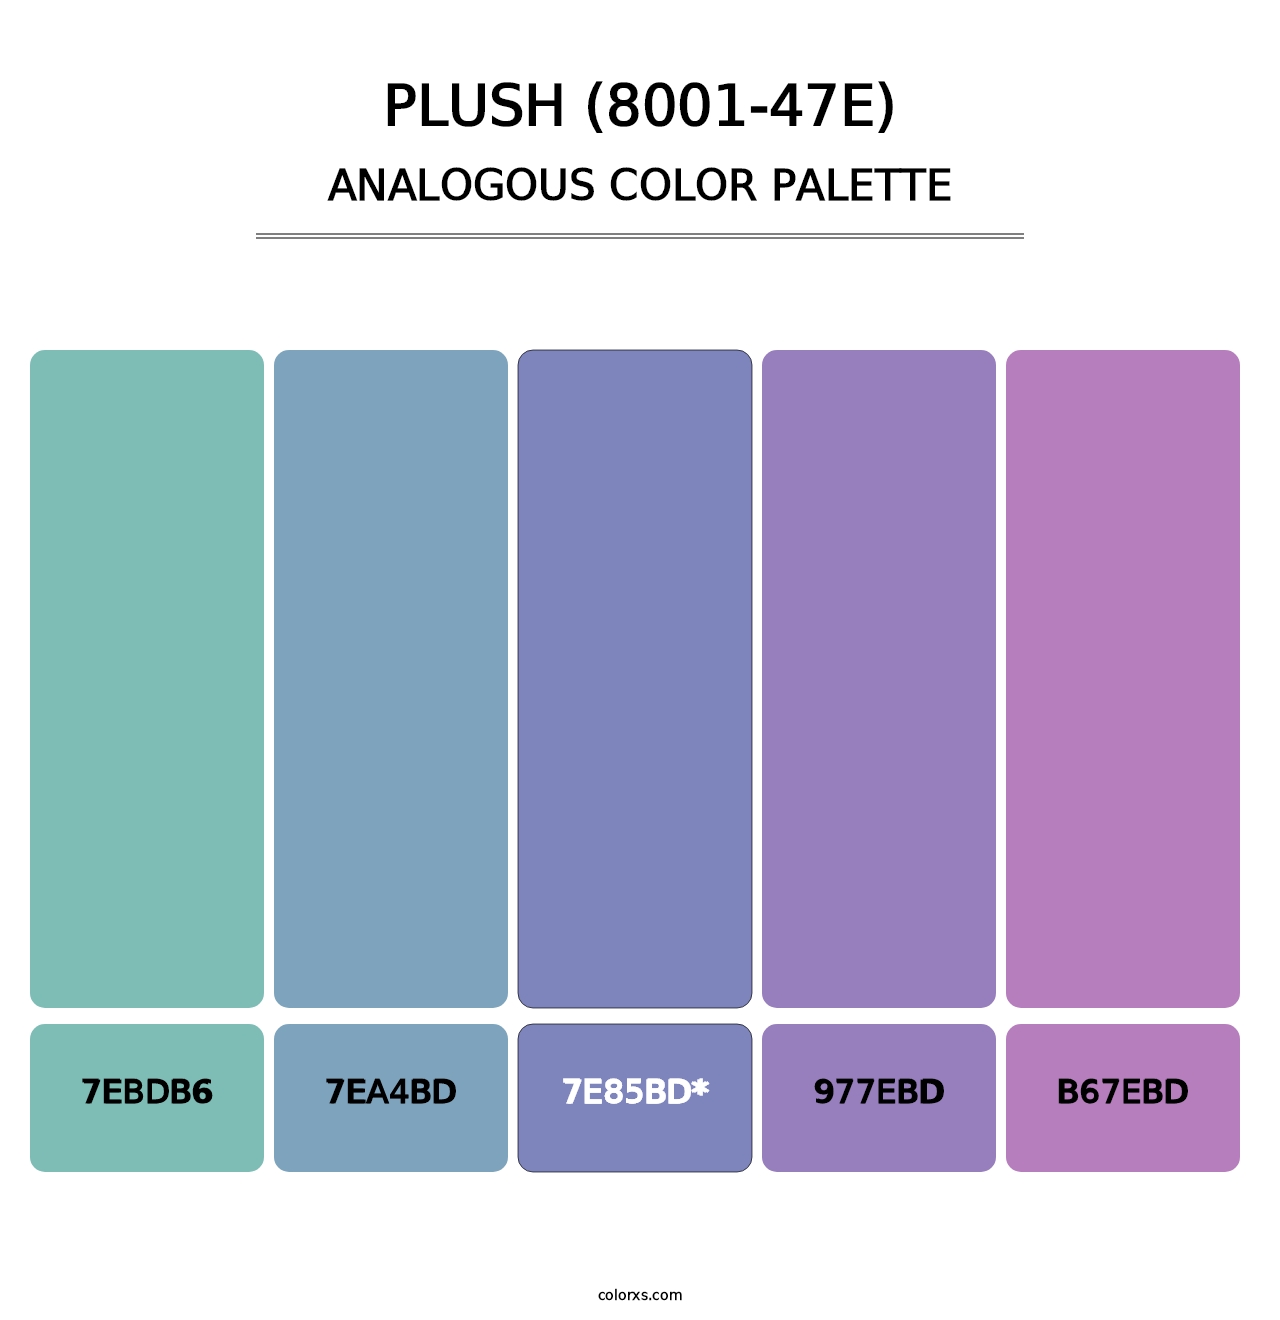 Plush (8001-47E) - Analogous Color Palette